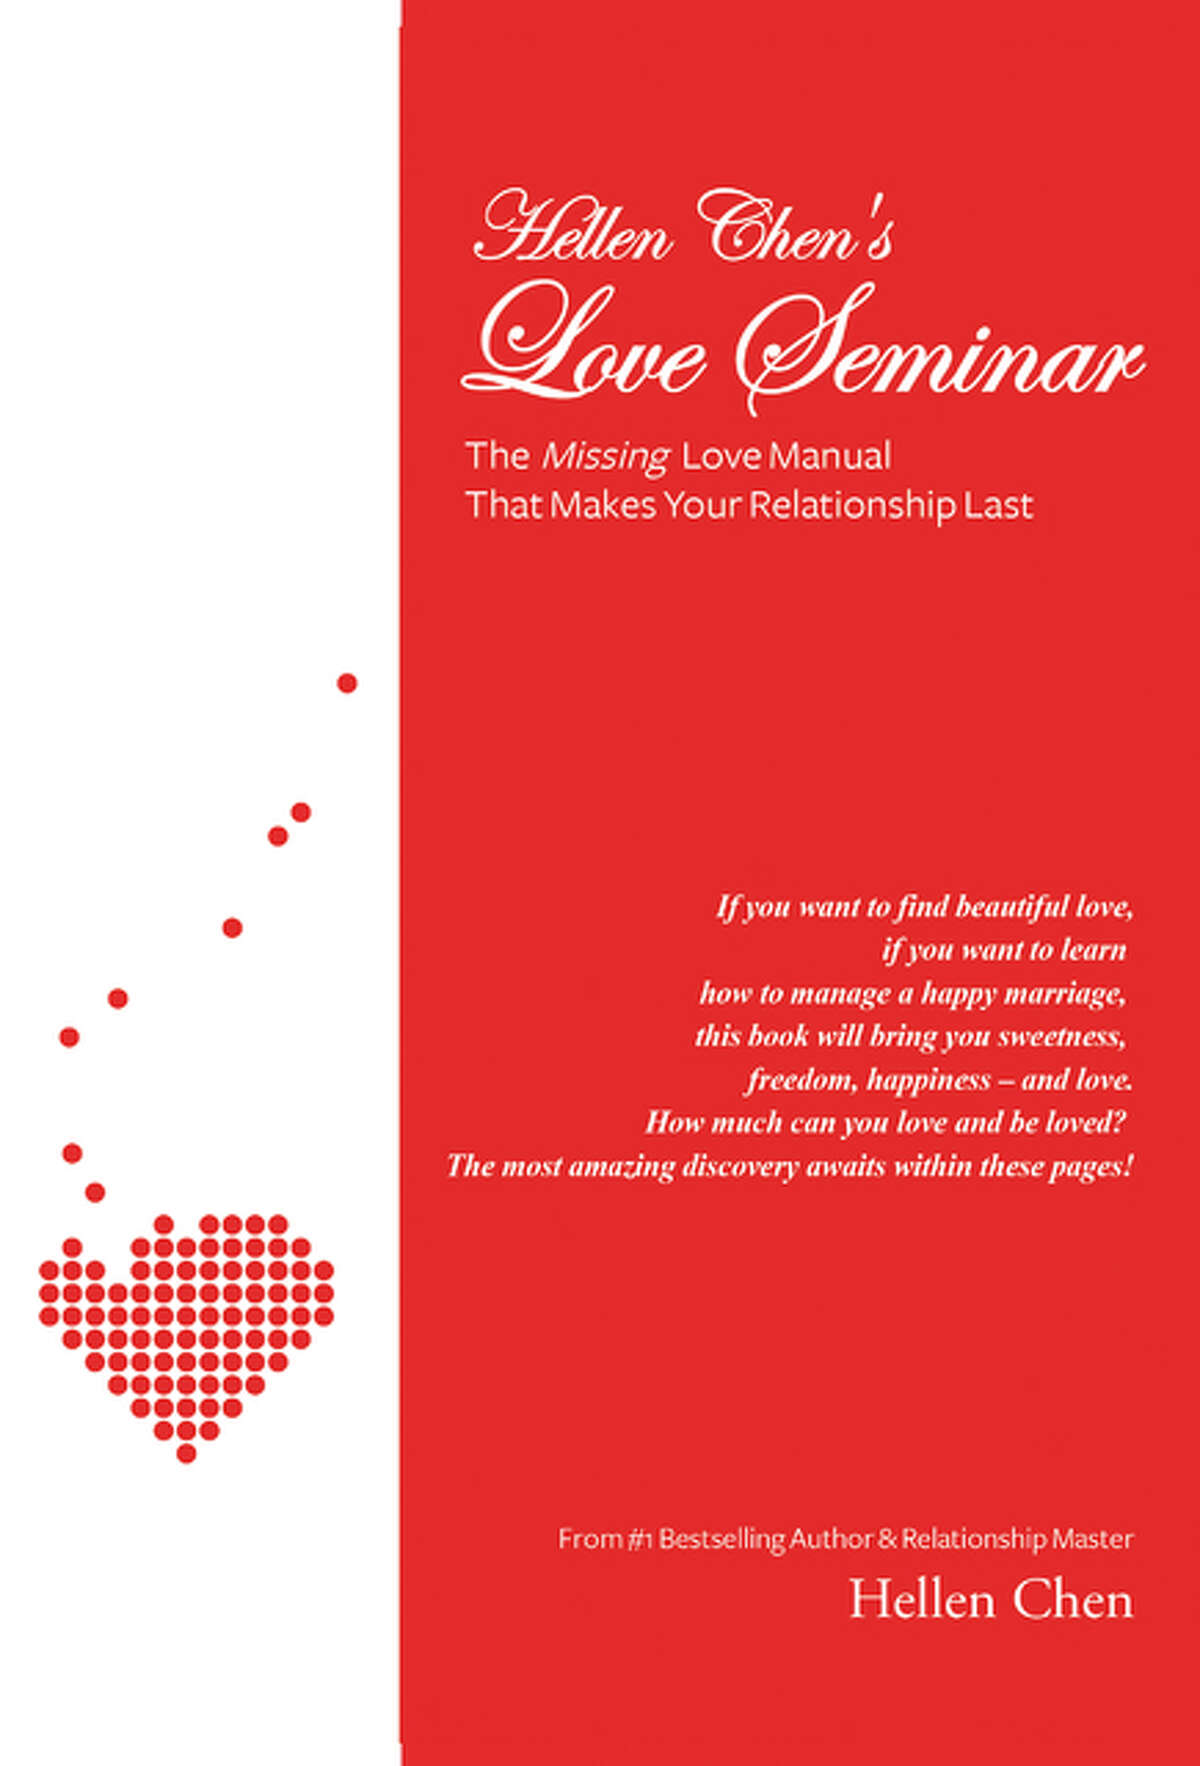 “Hellen Chen’s Love Seminar”